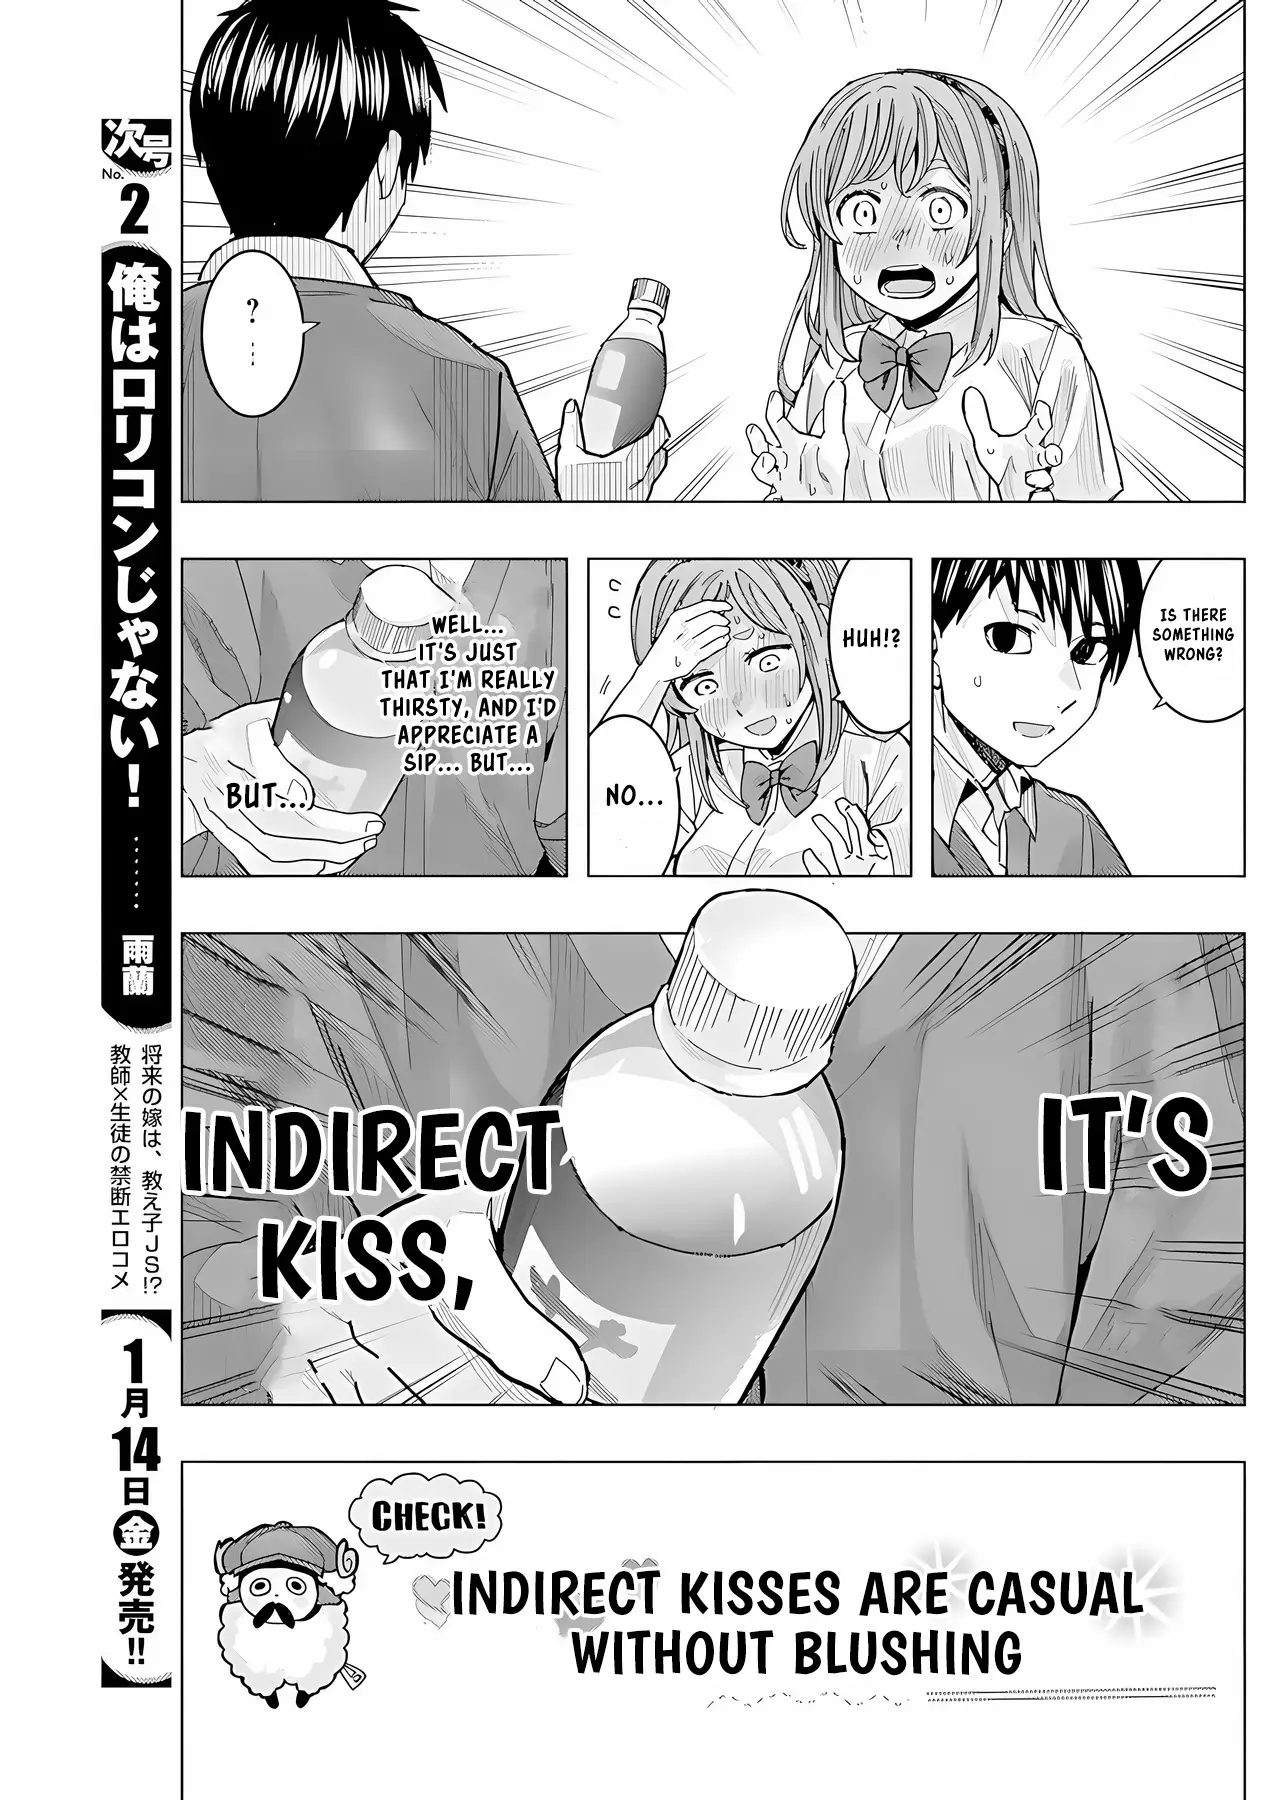 "nobukuni-San" Does She Like Me? - 26 page 8-d06a01ee